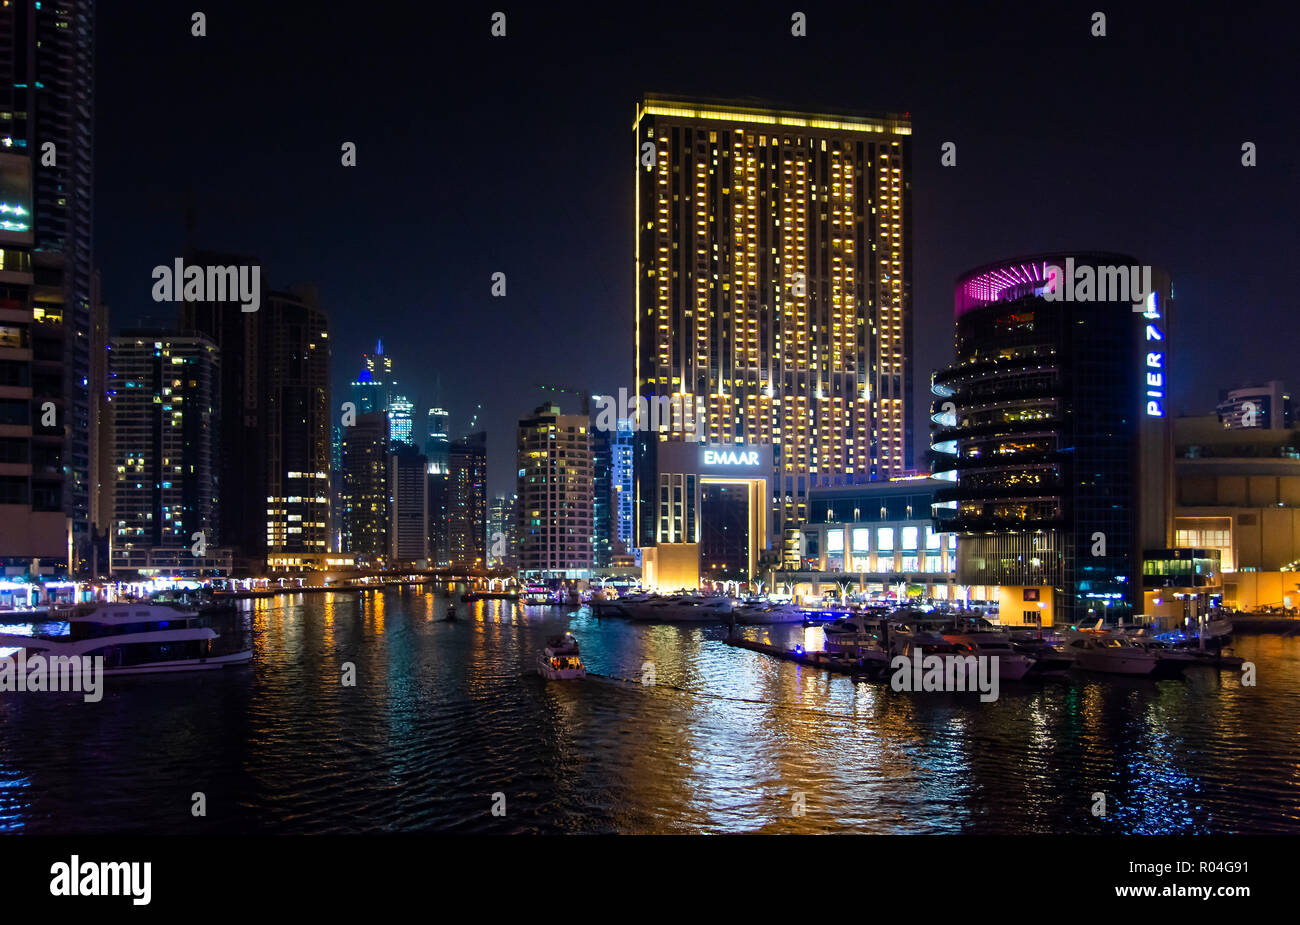 Dubai, Vereinigte Arabische Emirate - 8. März 2018: Dubai Marina Nacht Blick von der Brücke, Luxus Szene Stockfoto